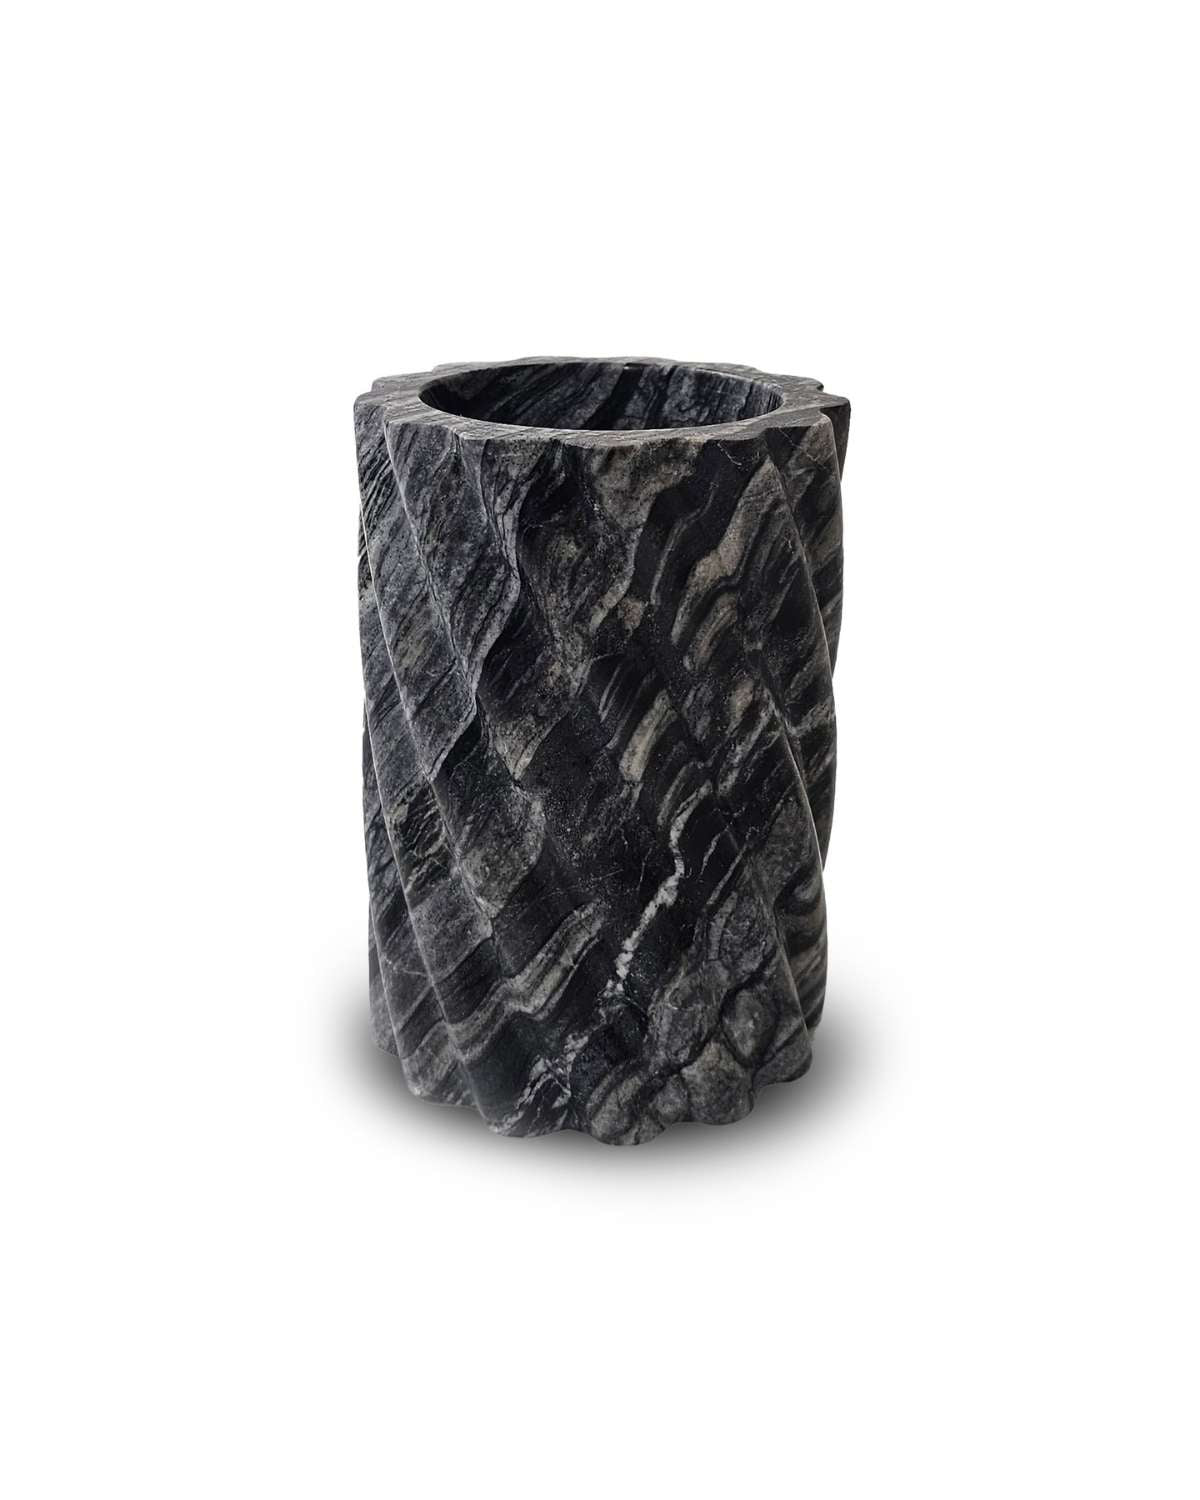 Black Marble Vase Decor Accents